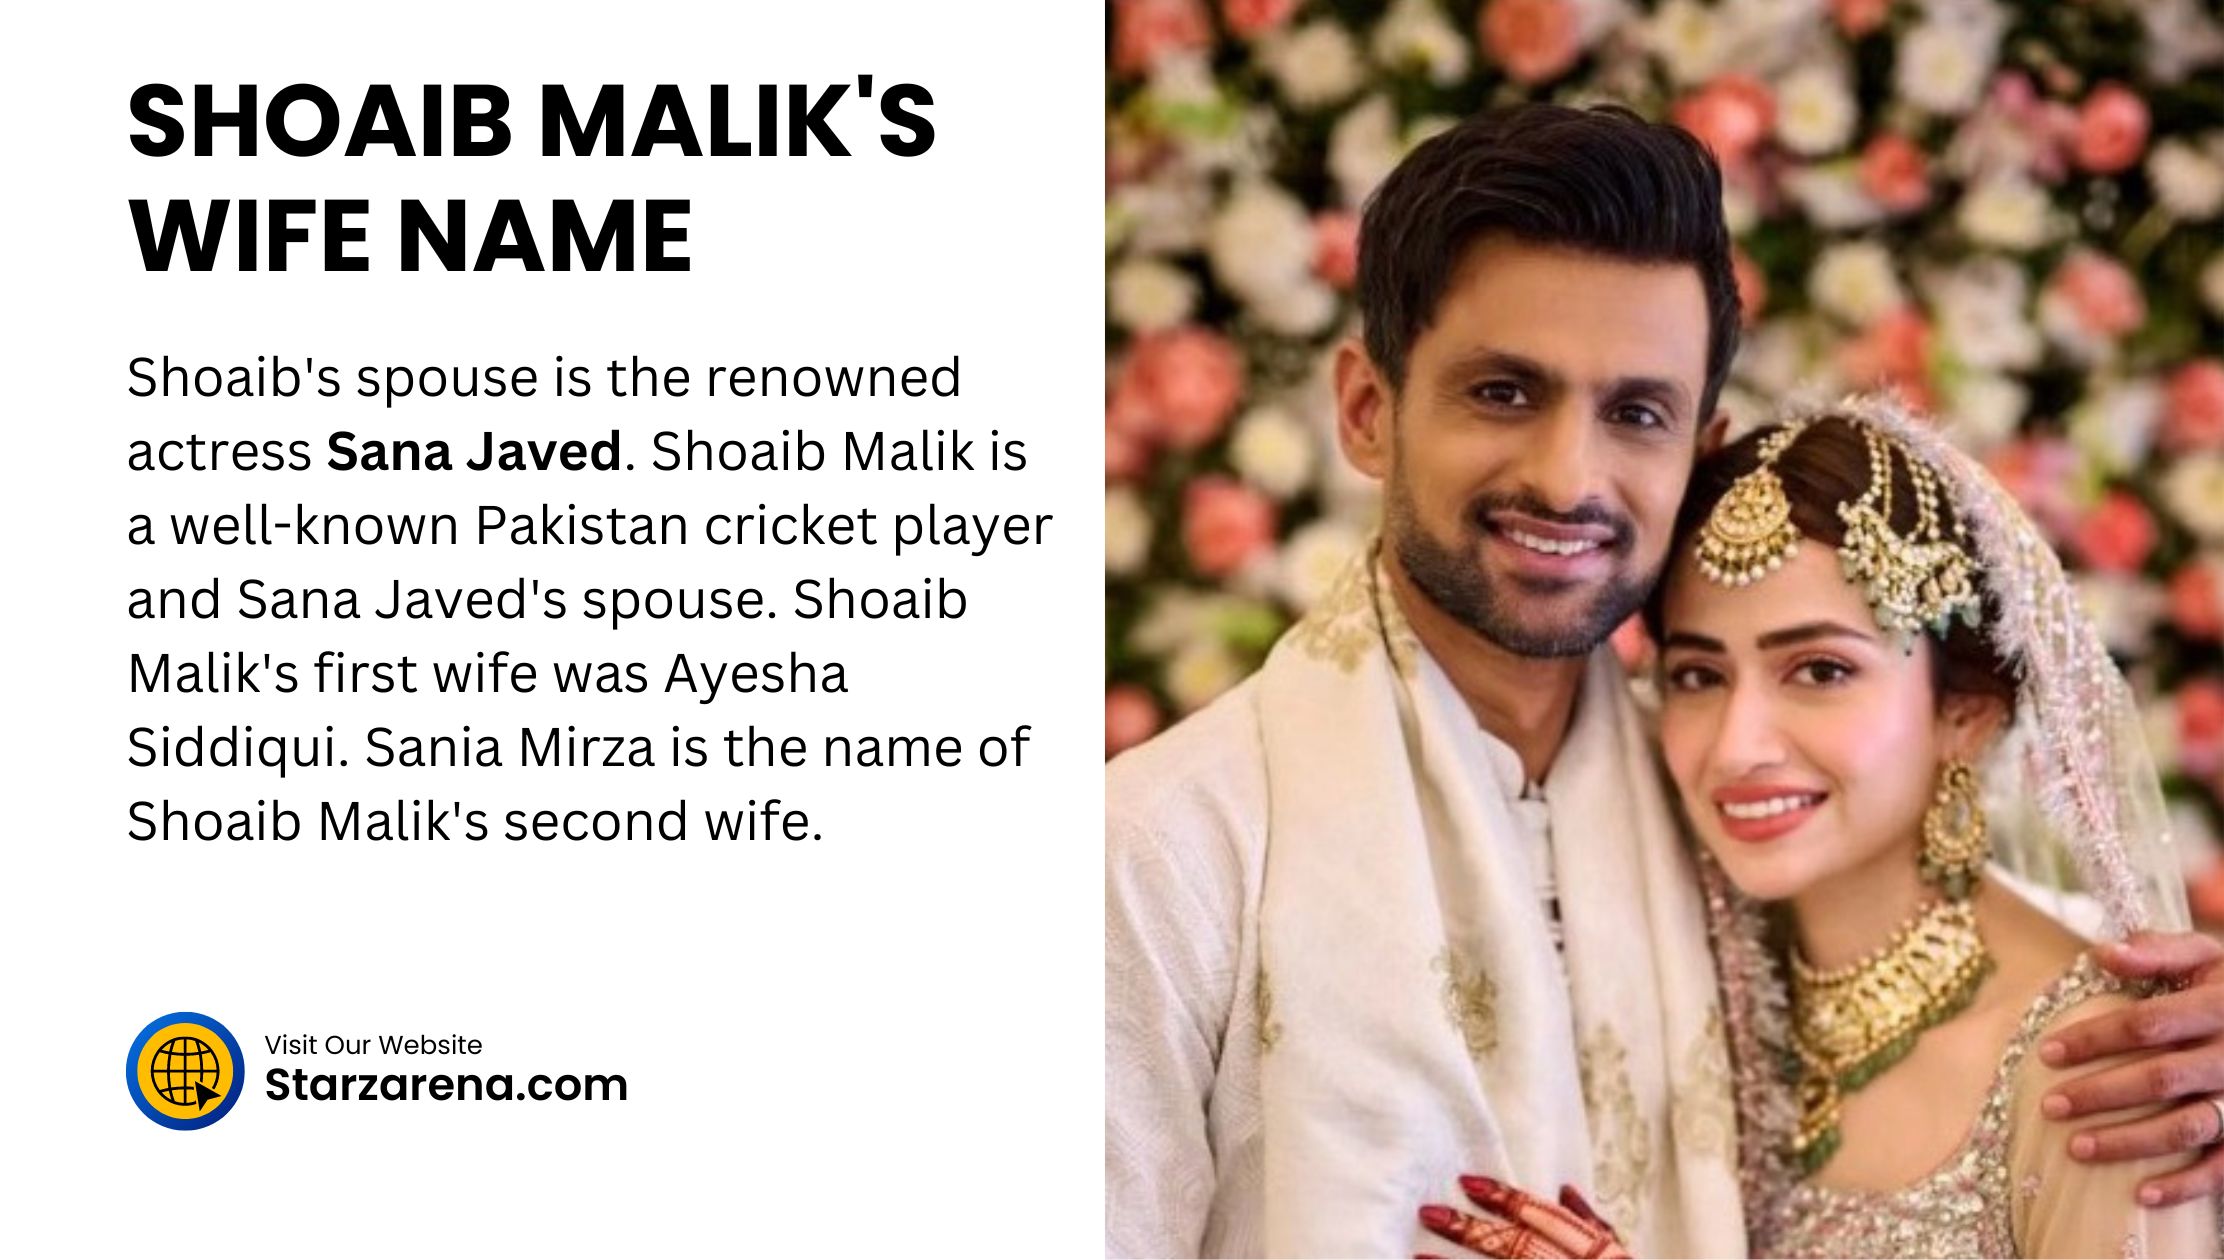 SHOAIB MALIK'S WIFE NAME